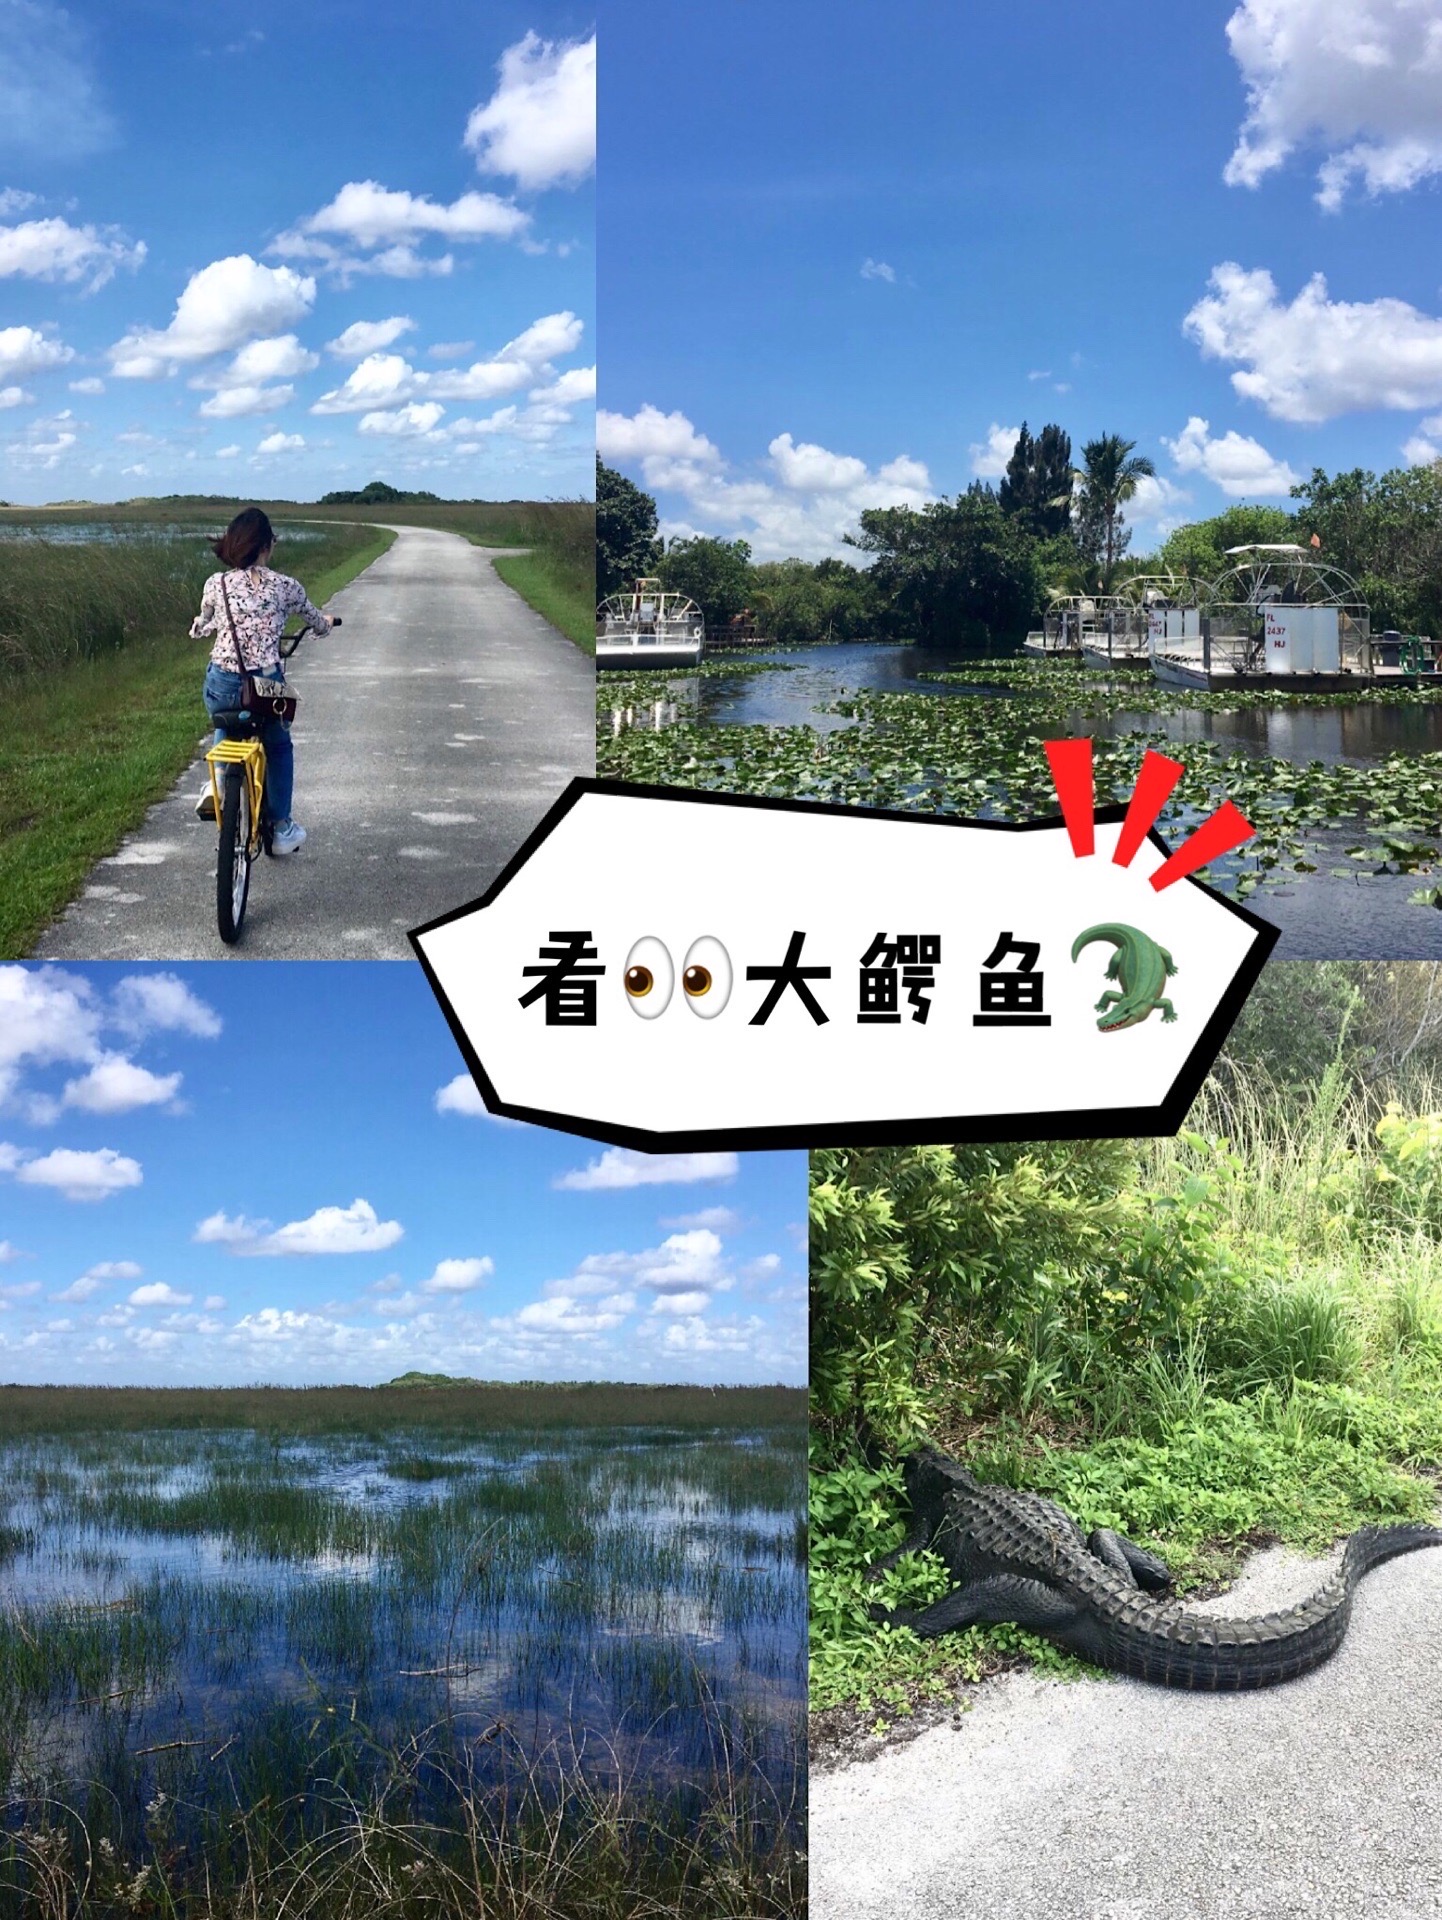 打卡大沼泽国家公园，骑着小黄车找鳄鱼🐊  佛罗里达南部的大沼泽国家公园不太大（和黄石相比），是以鳄鱼